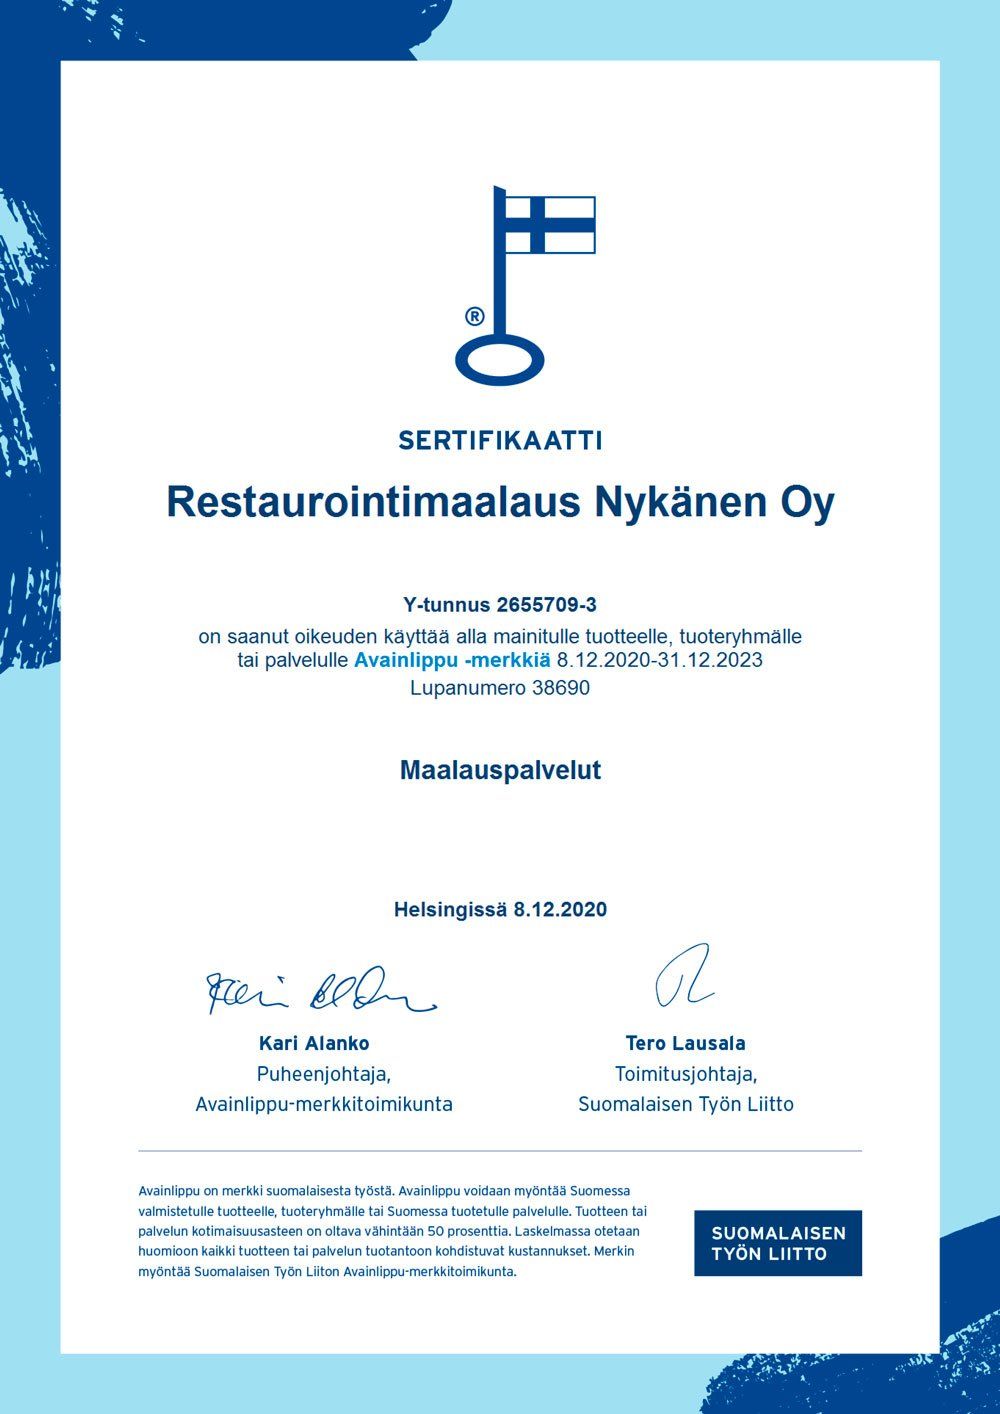 Avainlippu sertifikaatti Restaurointimaalaus Nykänen Oy